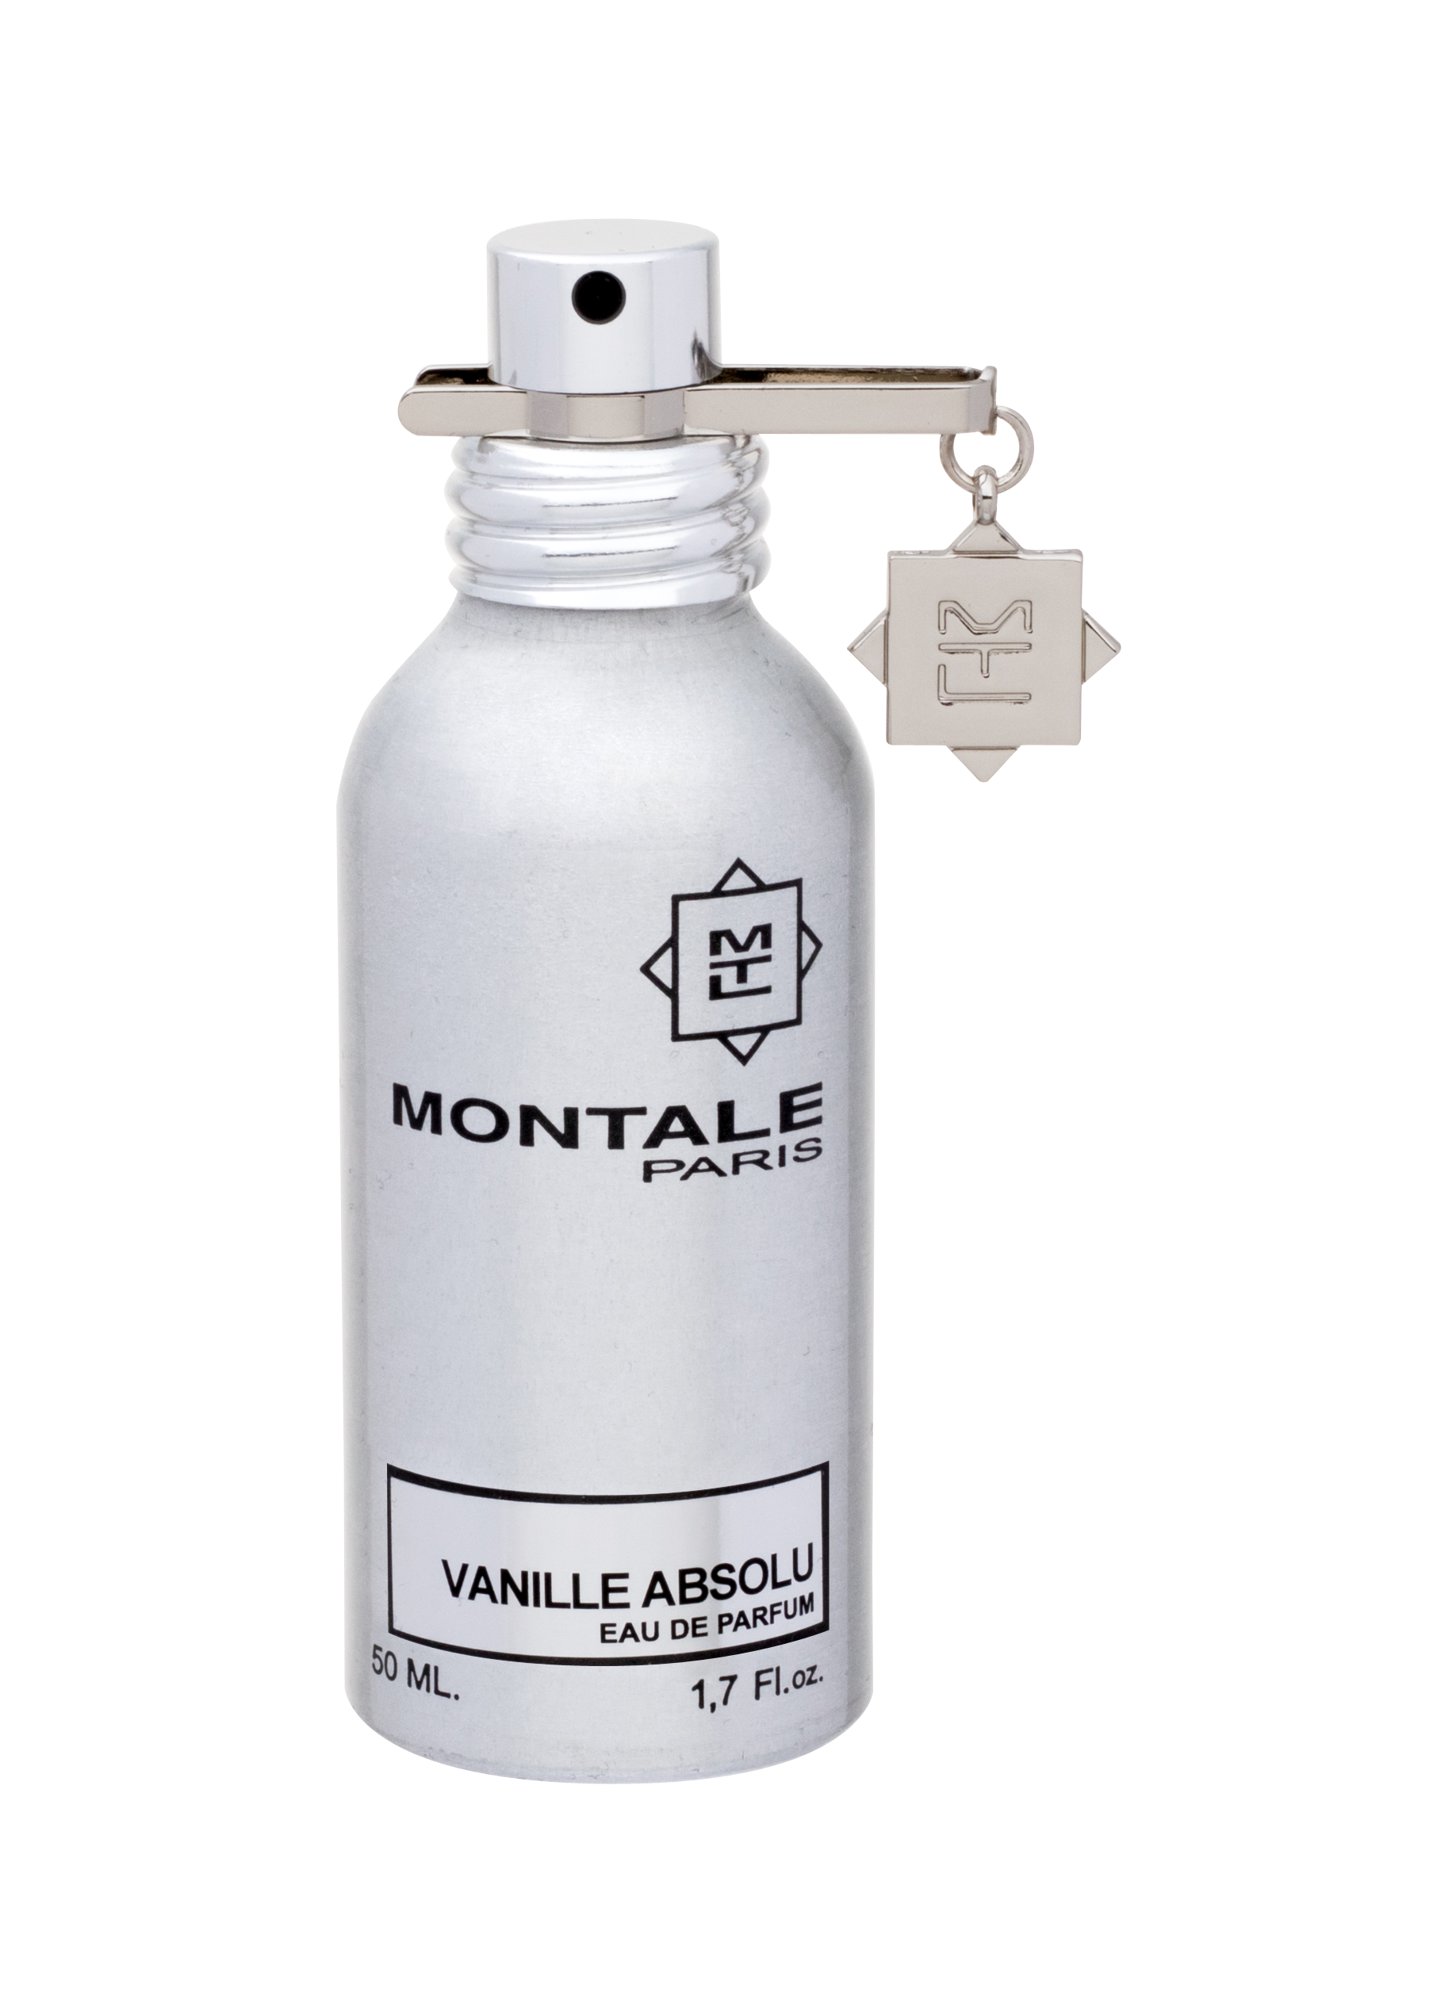 Montale Paris Vanille Absolu, EDP 50ml